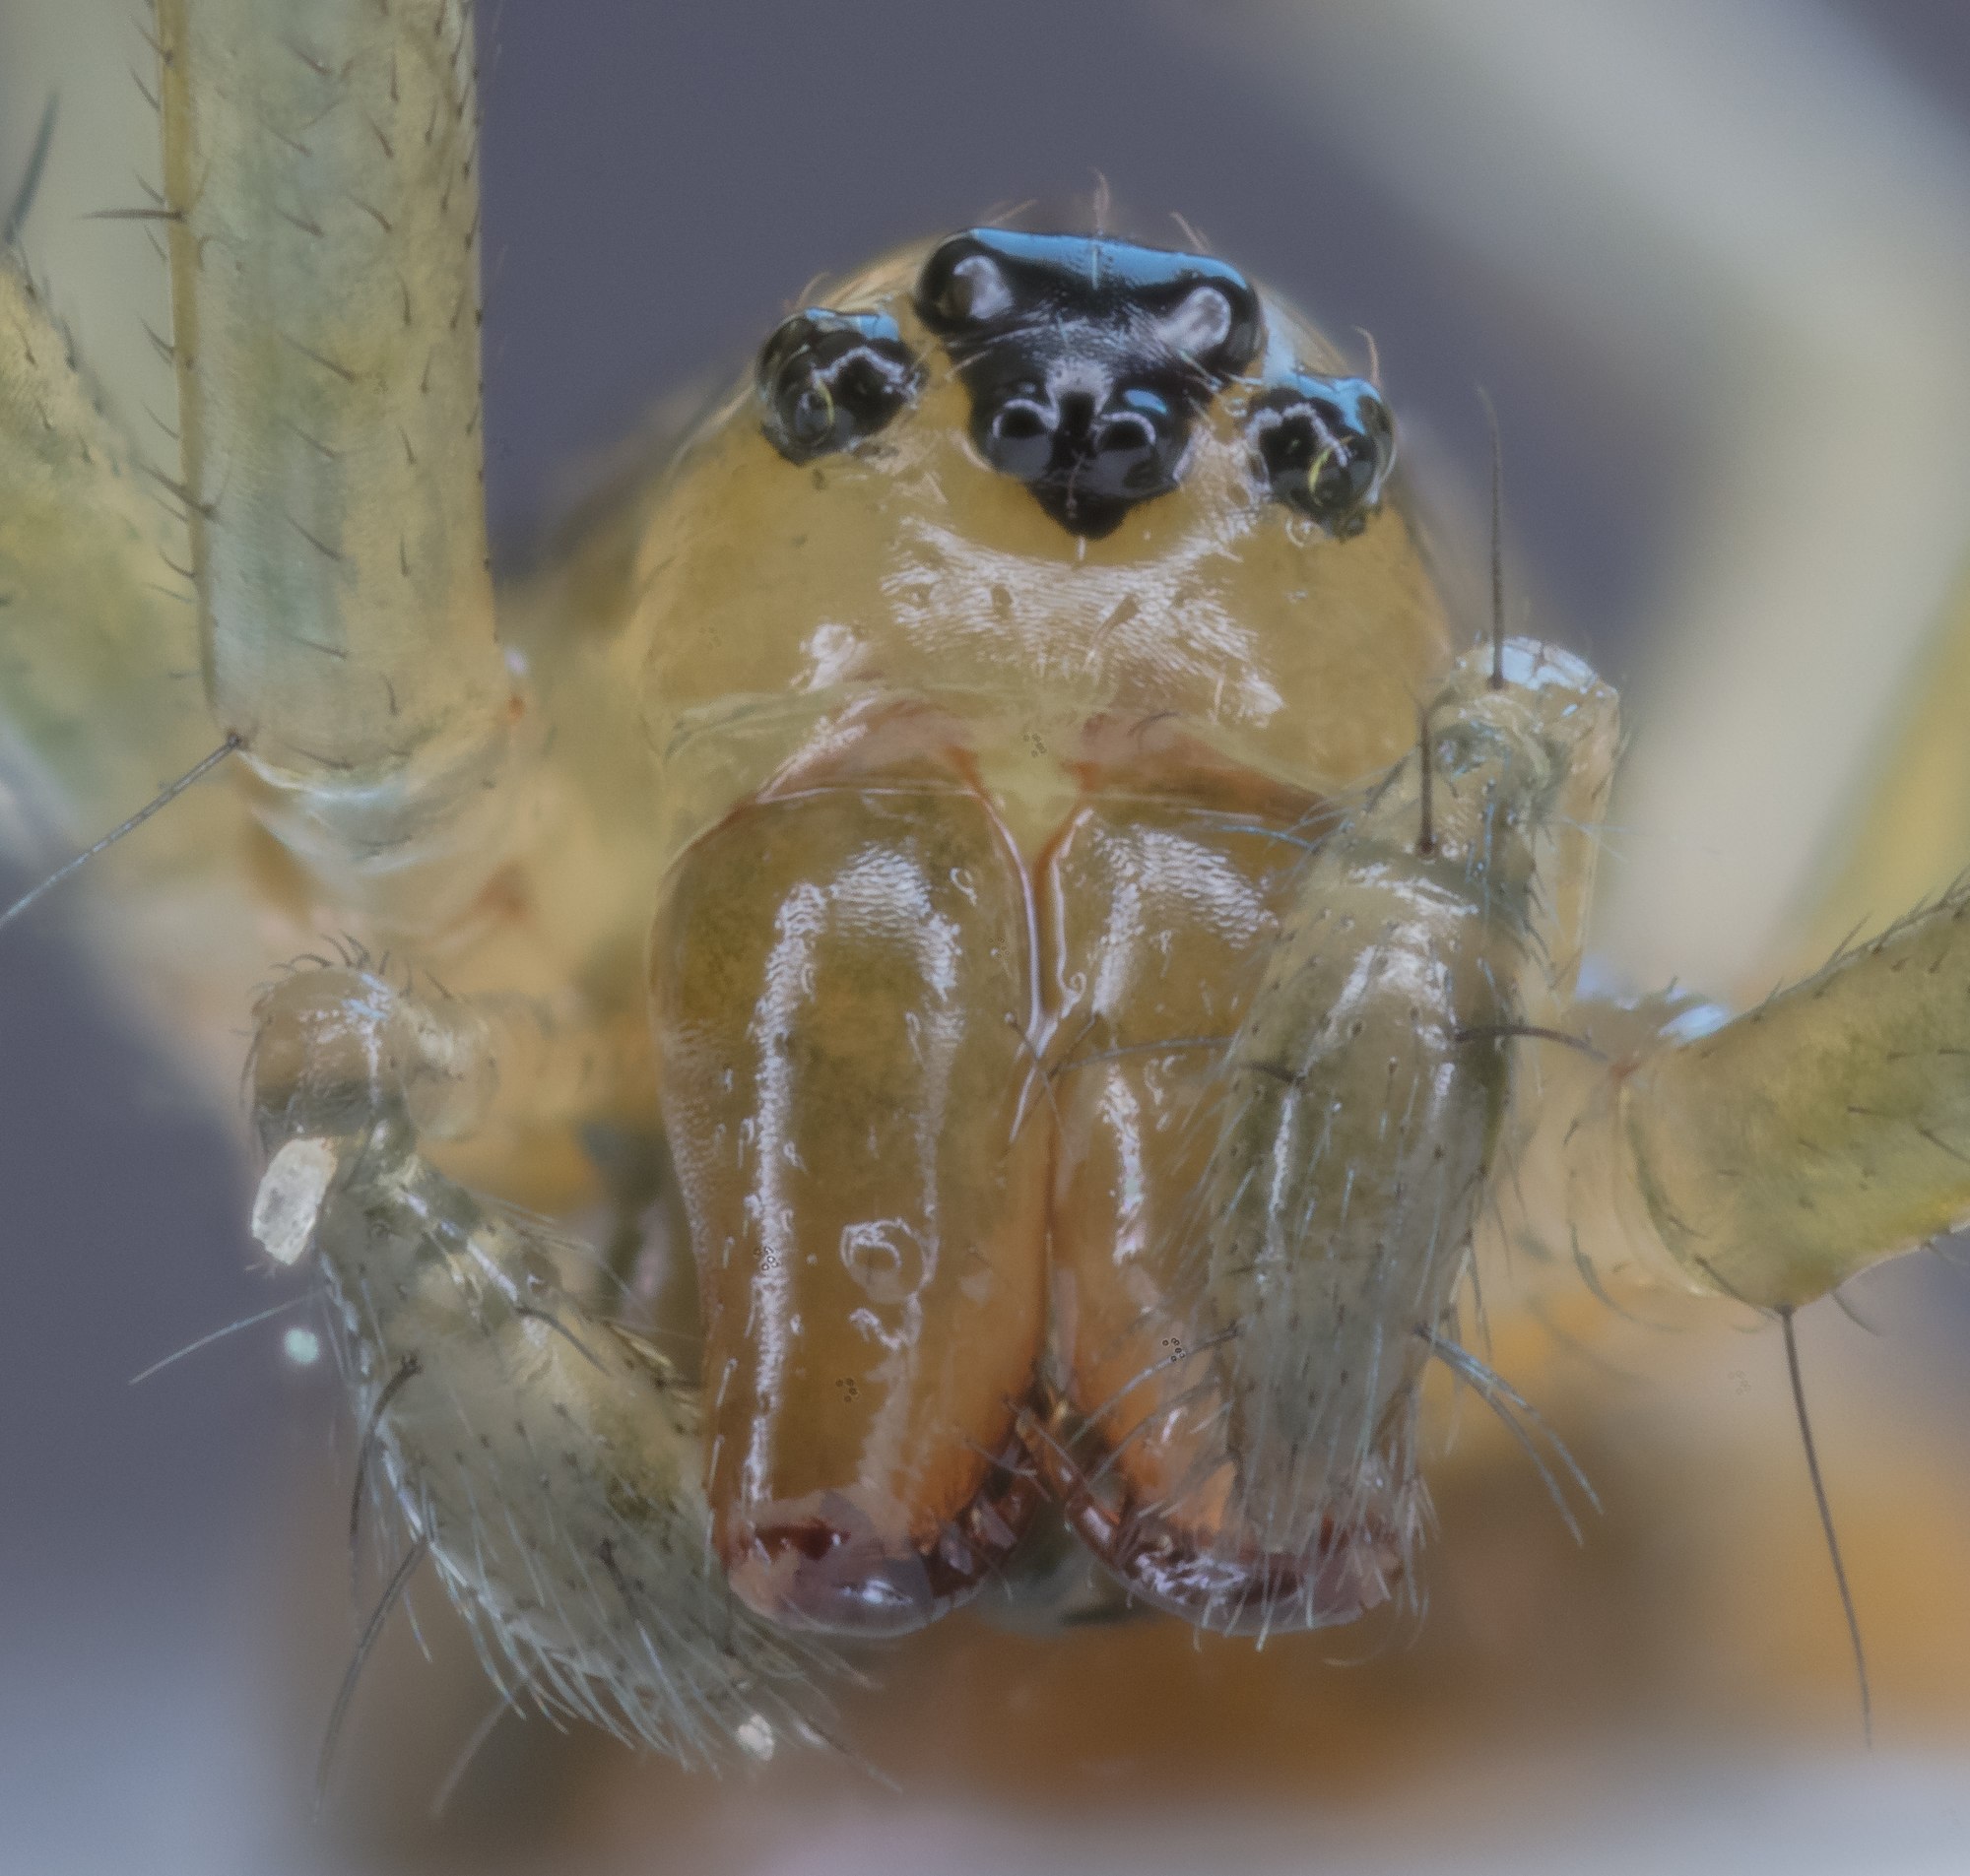 Yellow sac spider (Cheiracanthium punctorium), Hartelholz, Munich, Germany